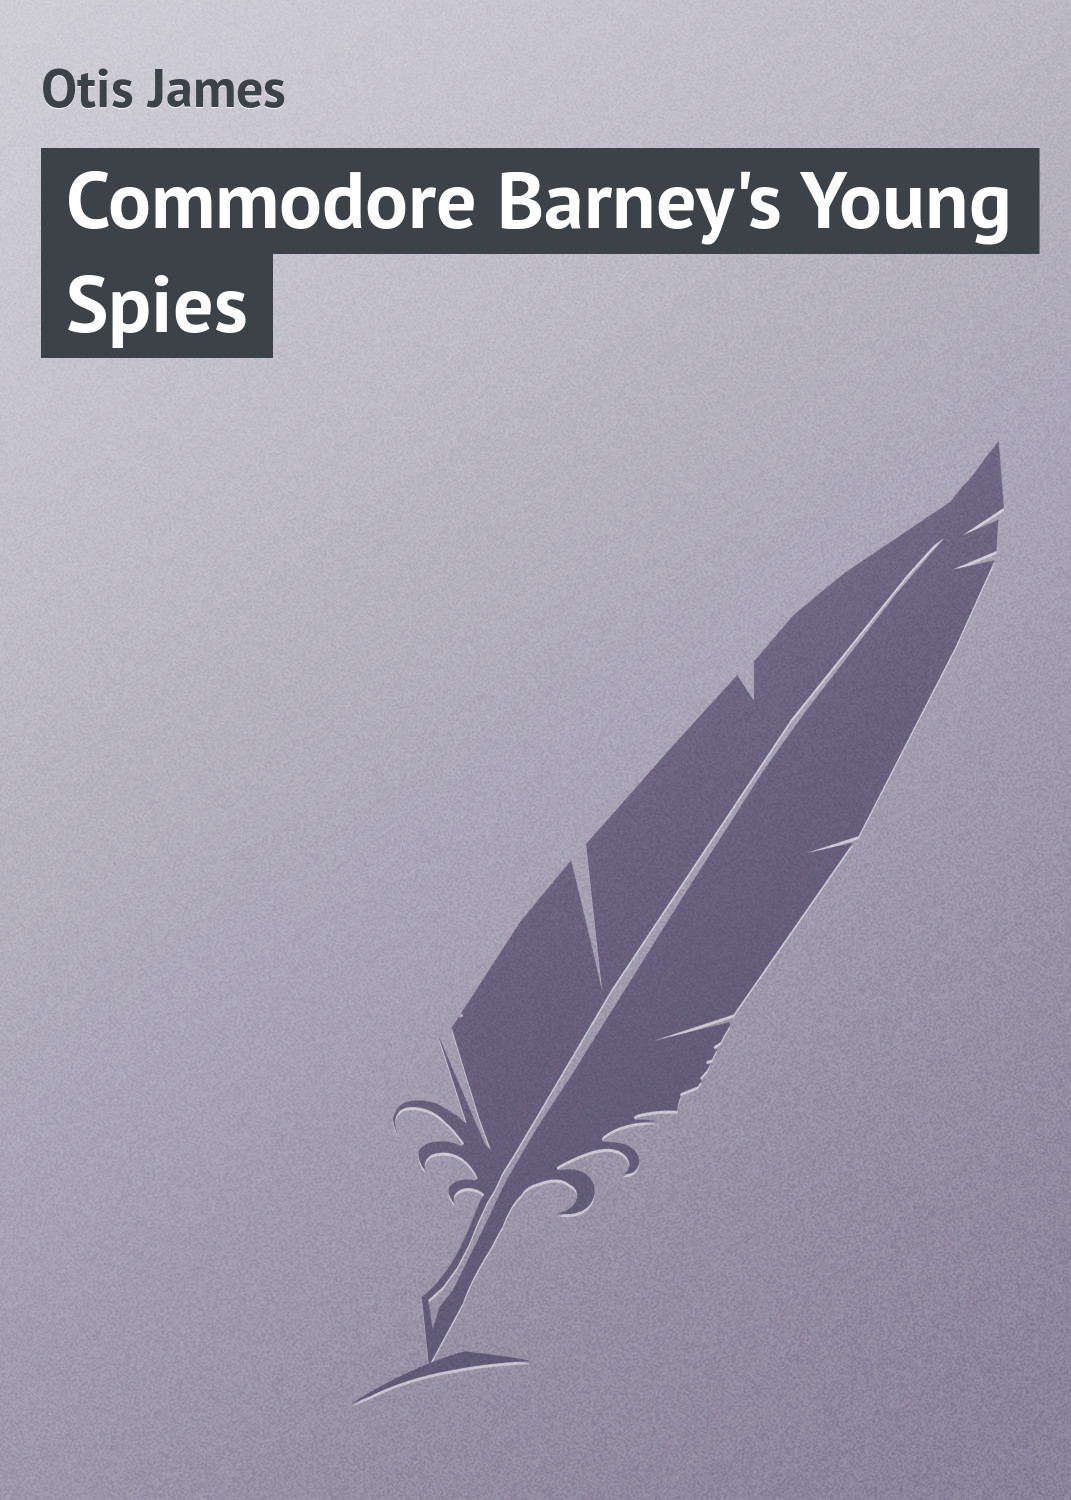 Книга Commodore Barney's Young Spies из серии , созданная James Otis, может относится к жанру Зарубежные детские книги, Зарубежная классика, Иностранные языки. Стоимость электронной книги Commodore Barney's Young Spies с идентификатором 23146067 составляет 5.99 руб.